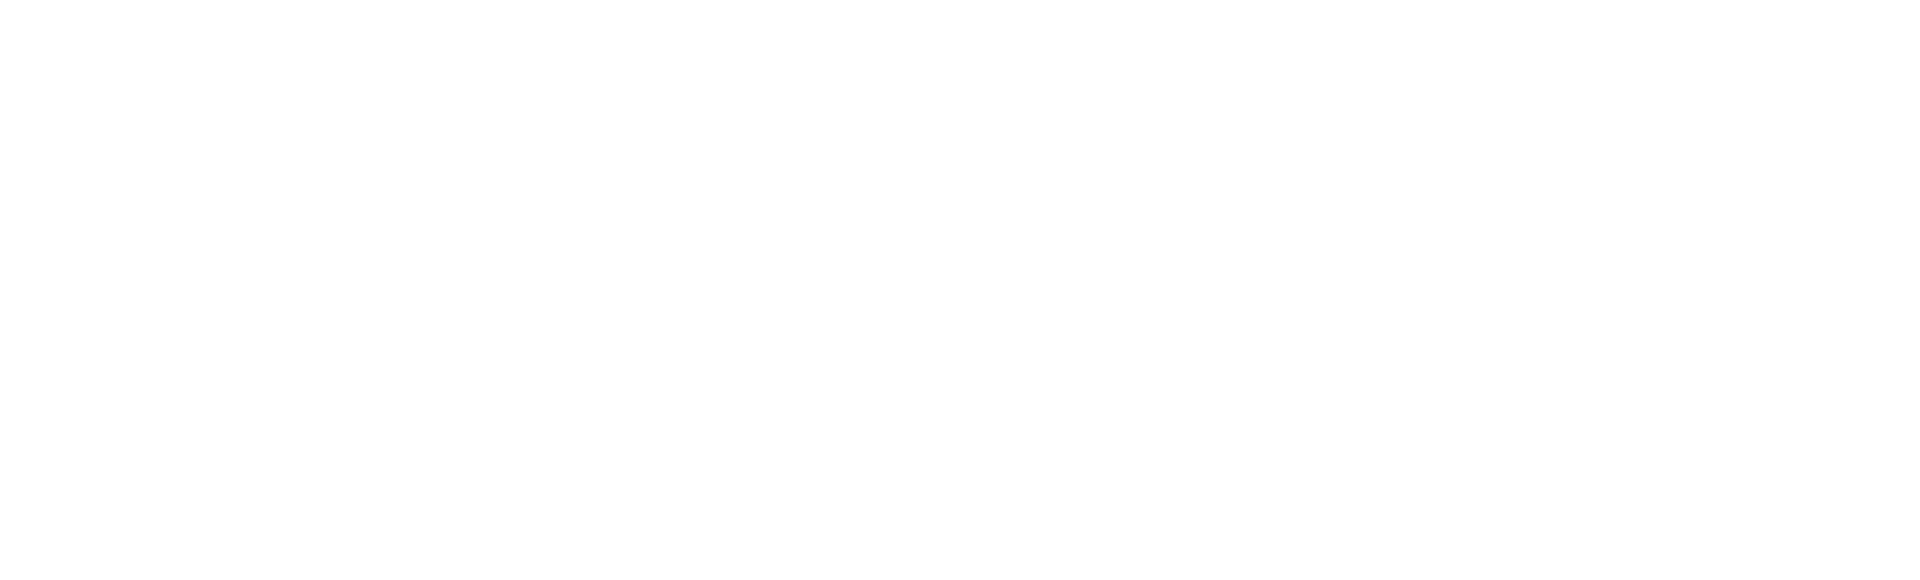 Chainote logo